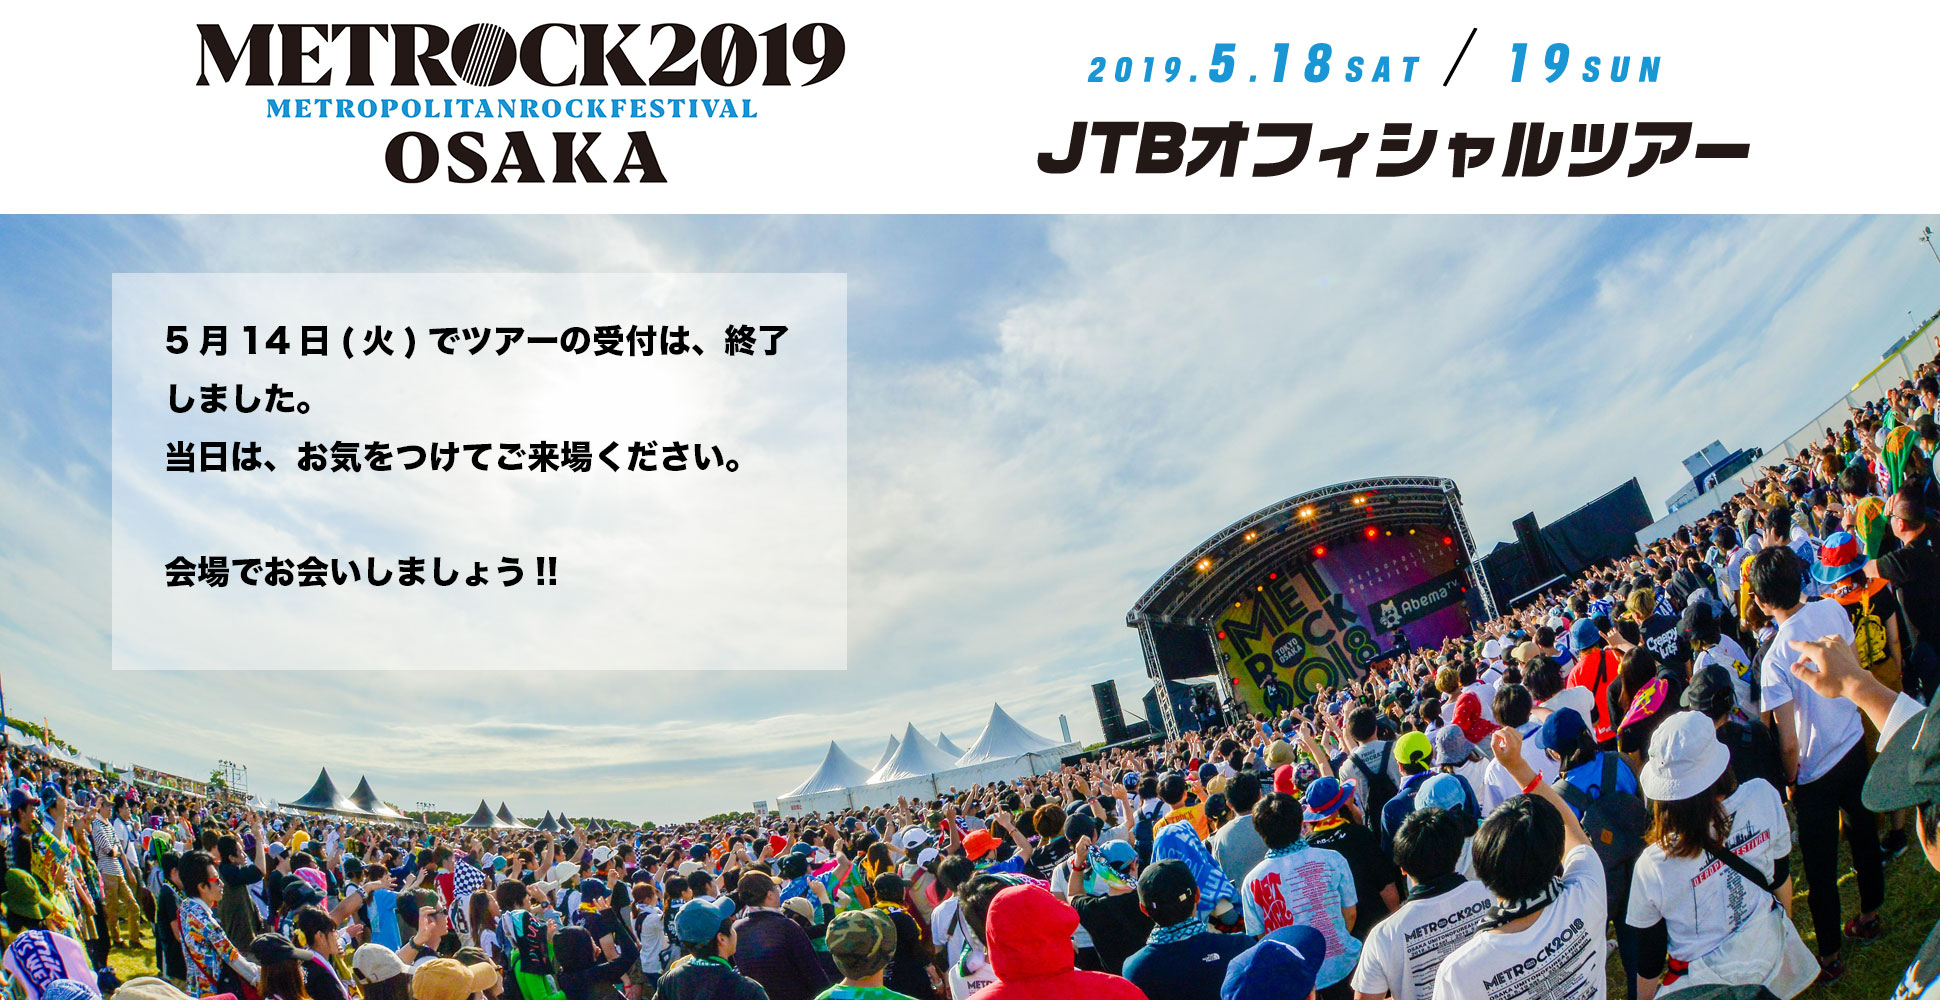 METROCK OSAKA 2019 JTBオフィシャルツアー